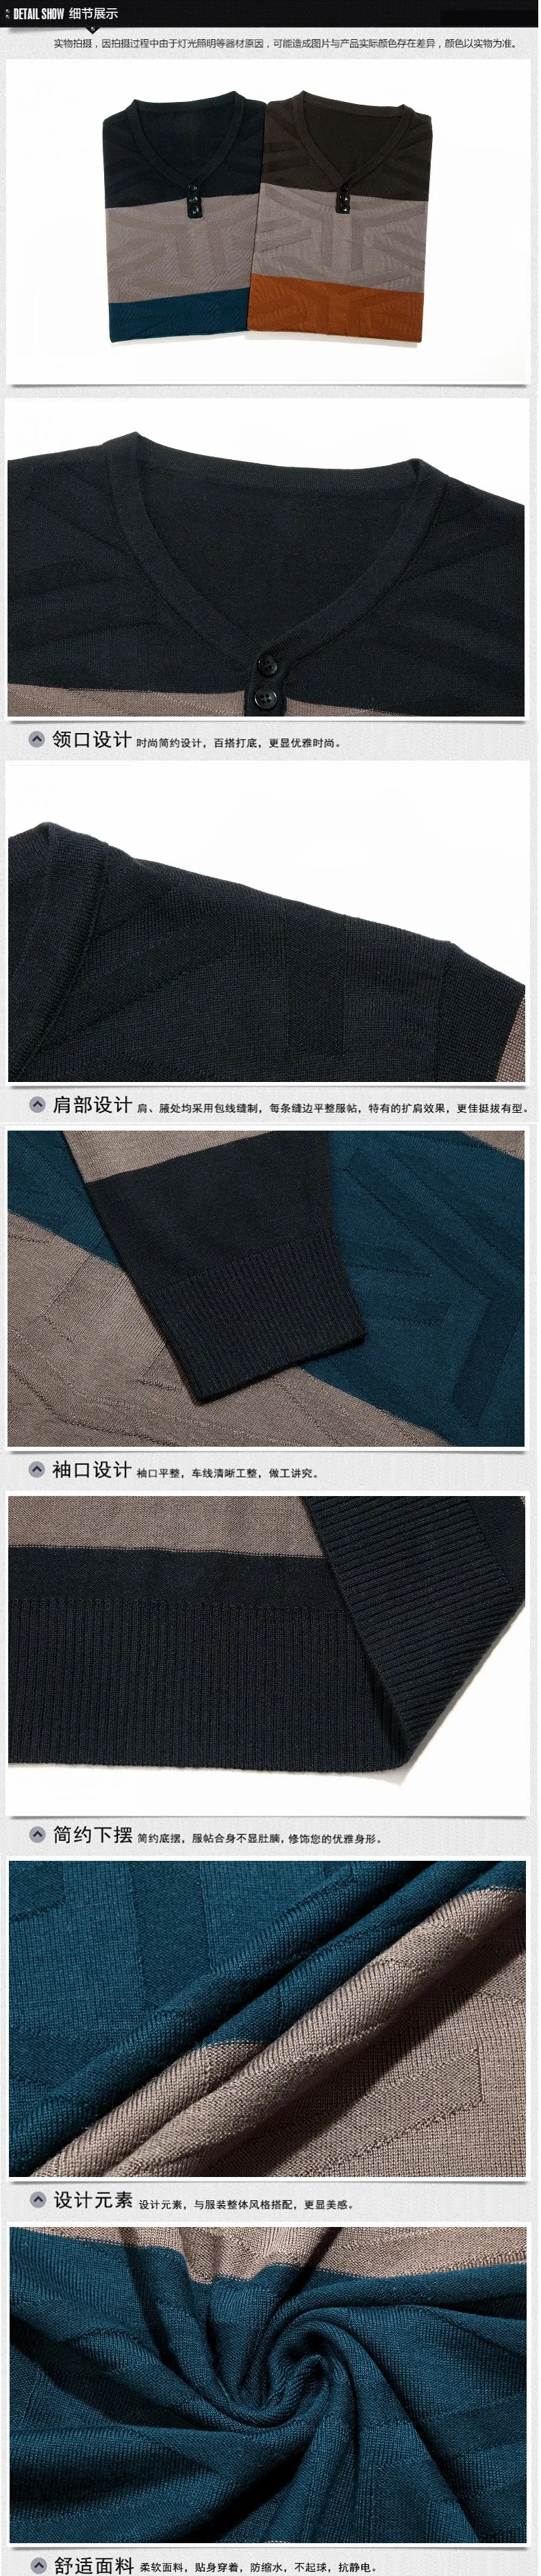 Новое поступление Мужской осенний тонкий цветной полосатый свитер с v-образным вырезом